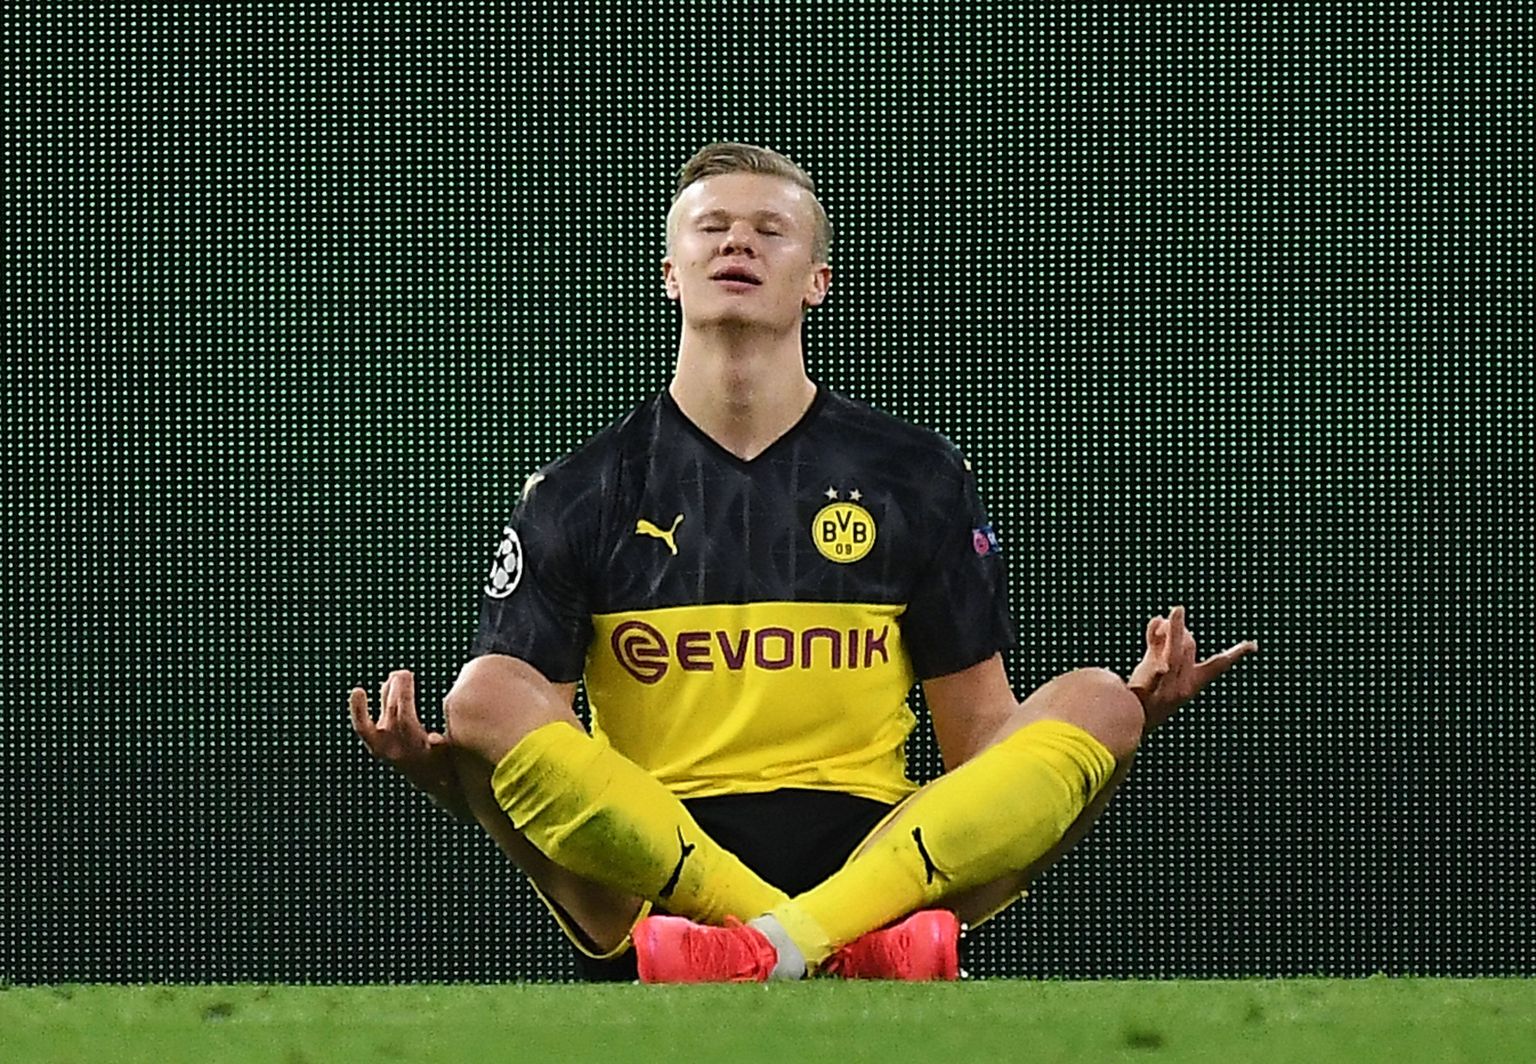 Norralasest 19-aastane Dortmundi Borussia jalgpallistaar Erling Haaland väravat tähistamas.